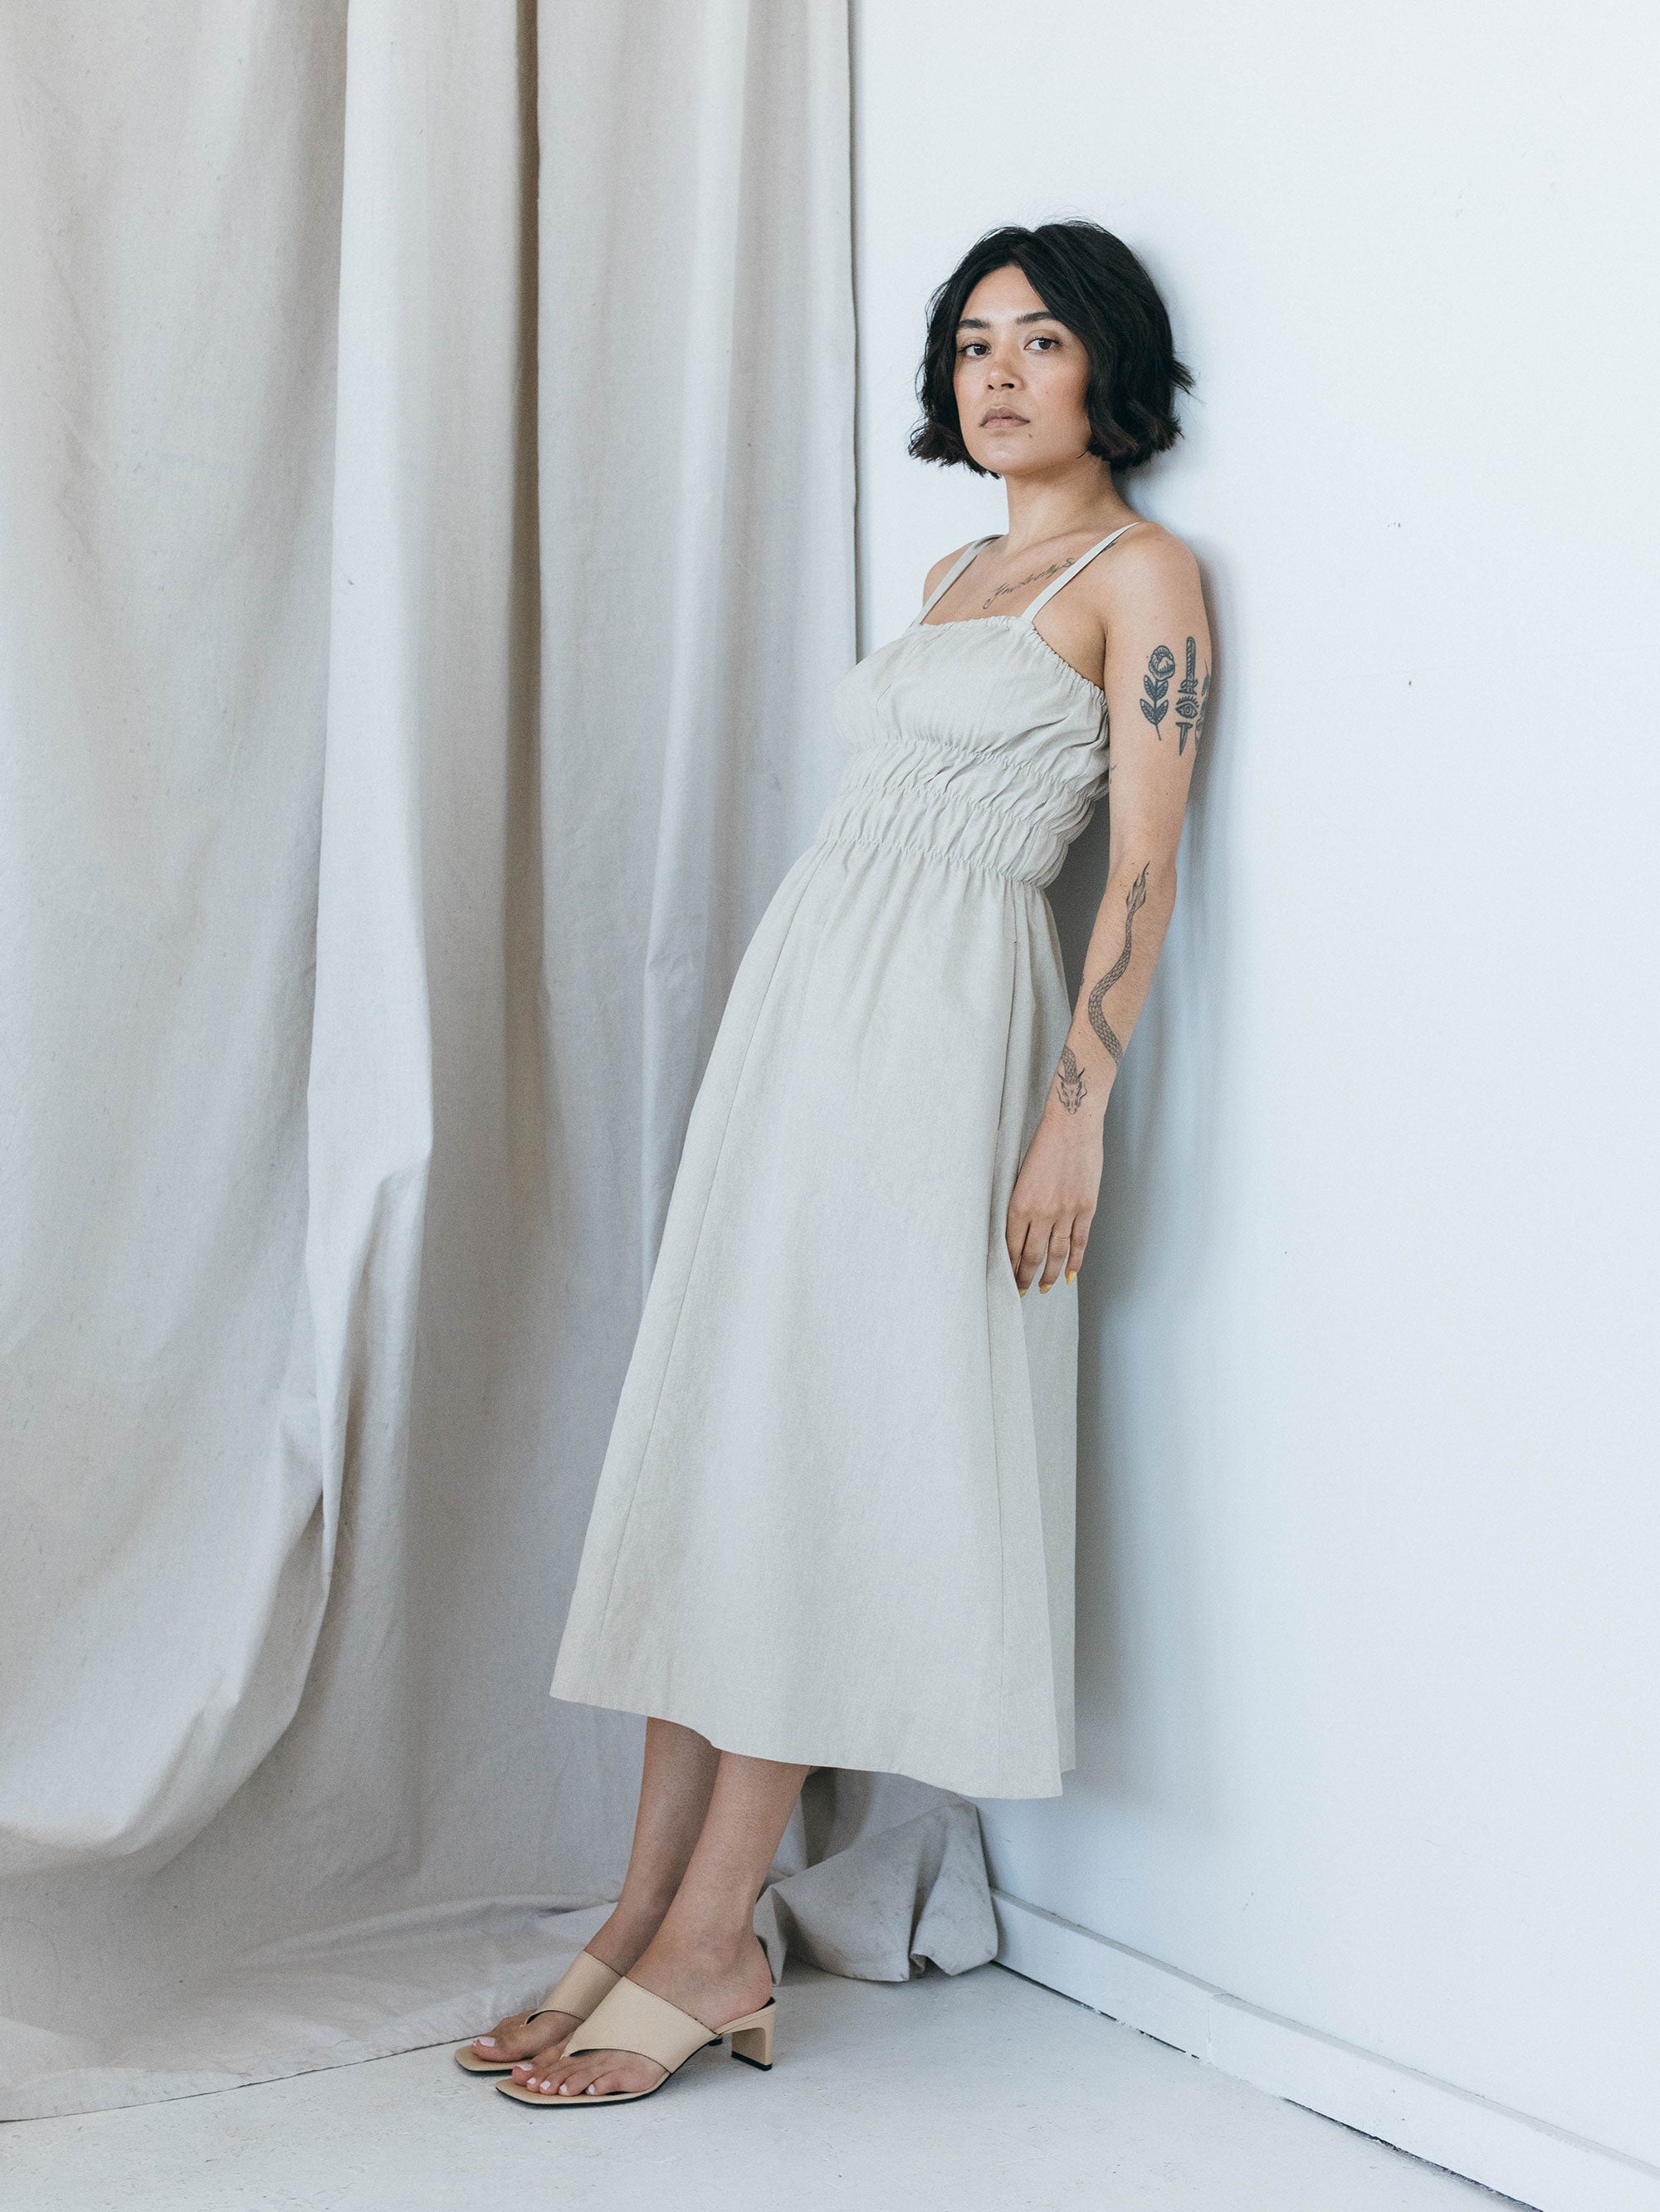 SAMPLE SALE - Verano Dress in Natural Twill - SMALL / STANDARD